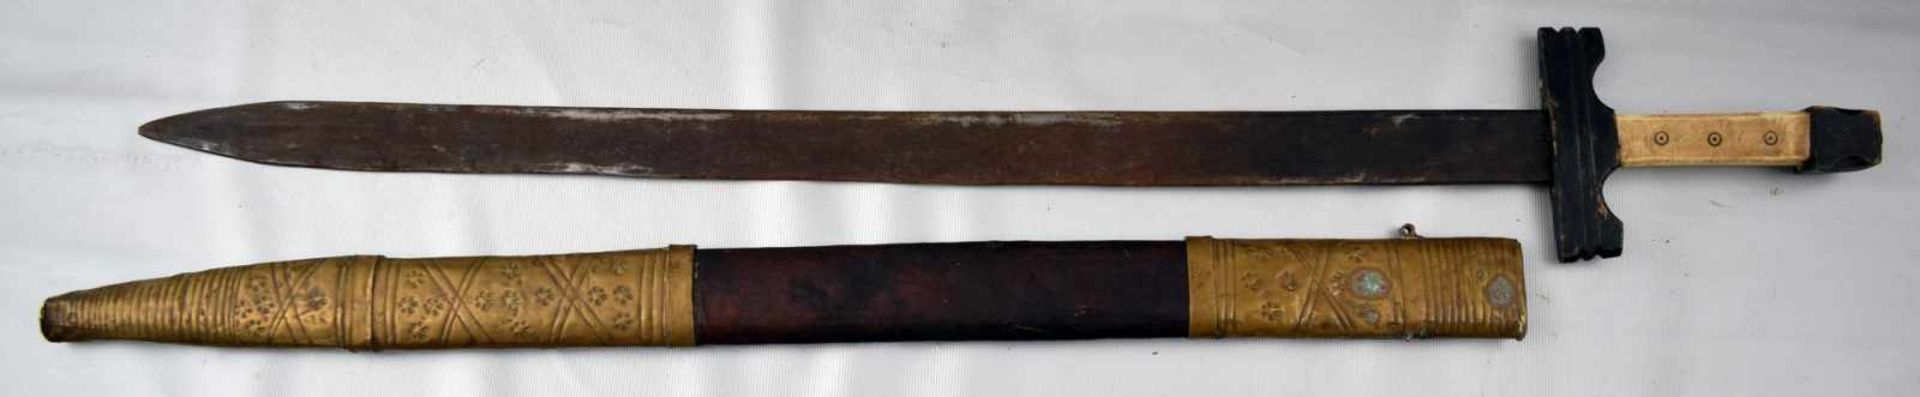 Schwert Lederscheide mit Messing, Griff Bein, L 75 cm